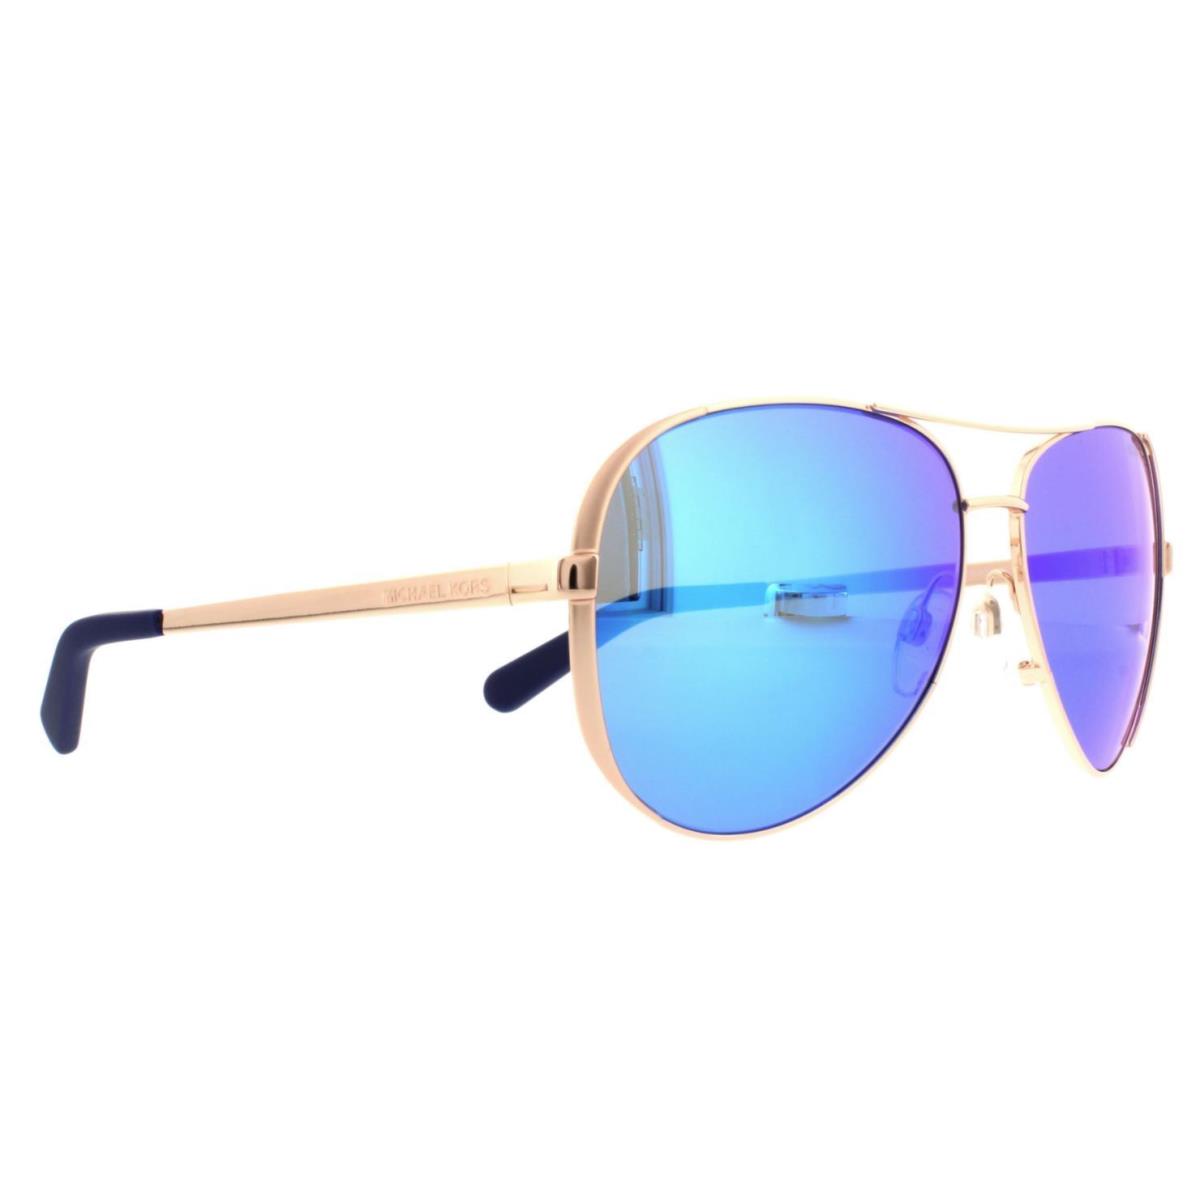 Michael Kors Gold Framed Sunglasses MK 5004 Chelsea 100325 Women Men Blue Mirror - Frame: Gold, Lens: Blue